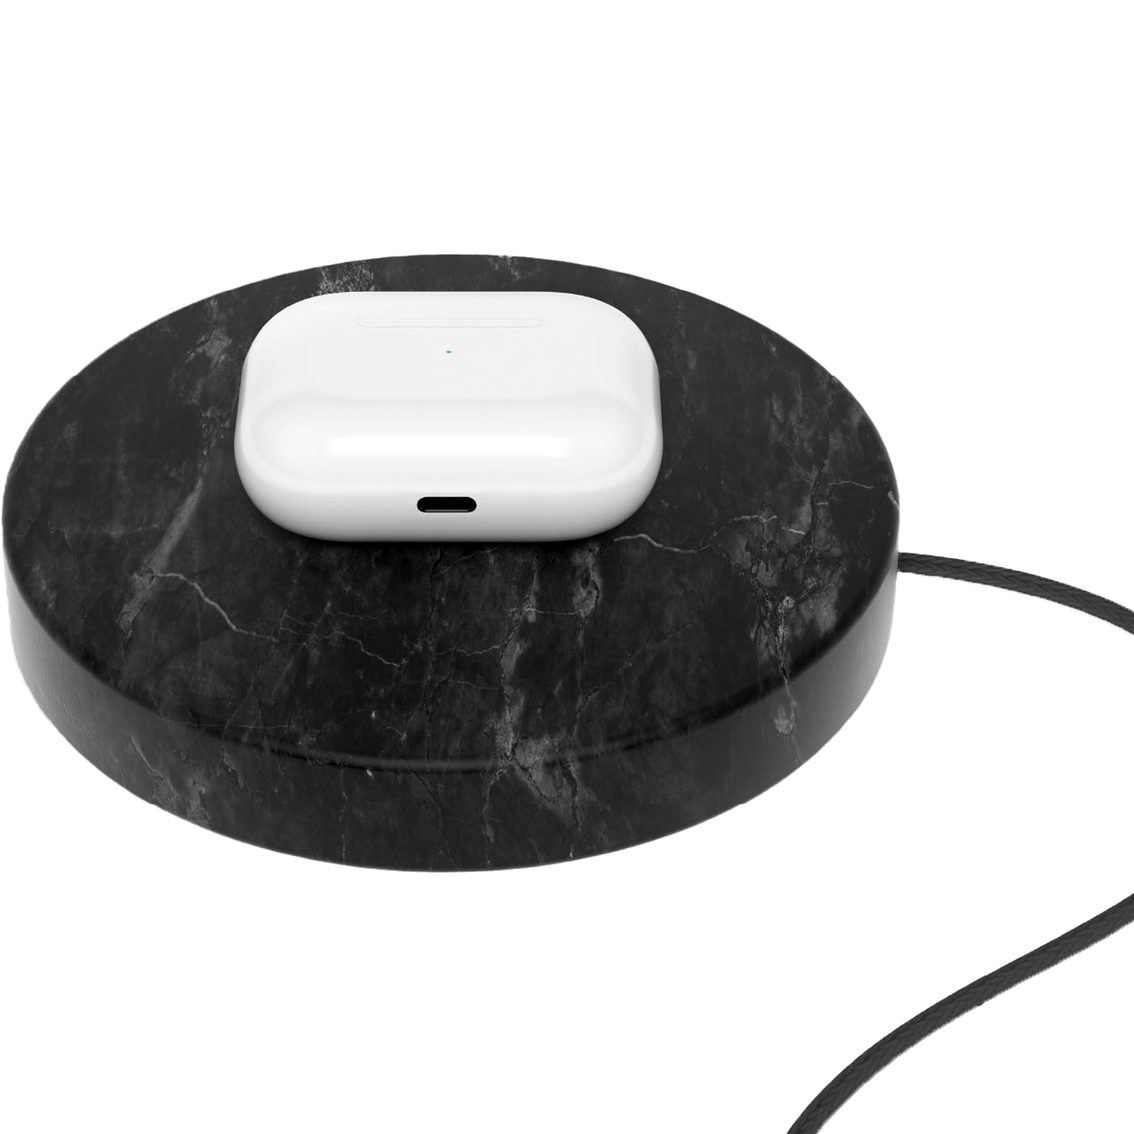 Einova Wireless Charging Stone - Image 4 of 10